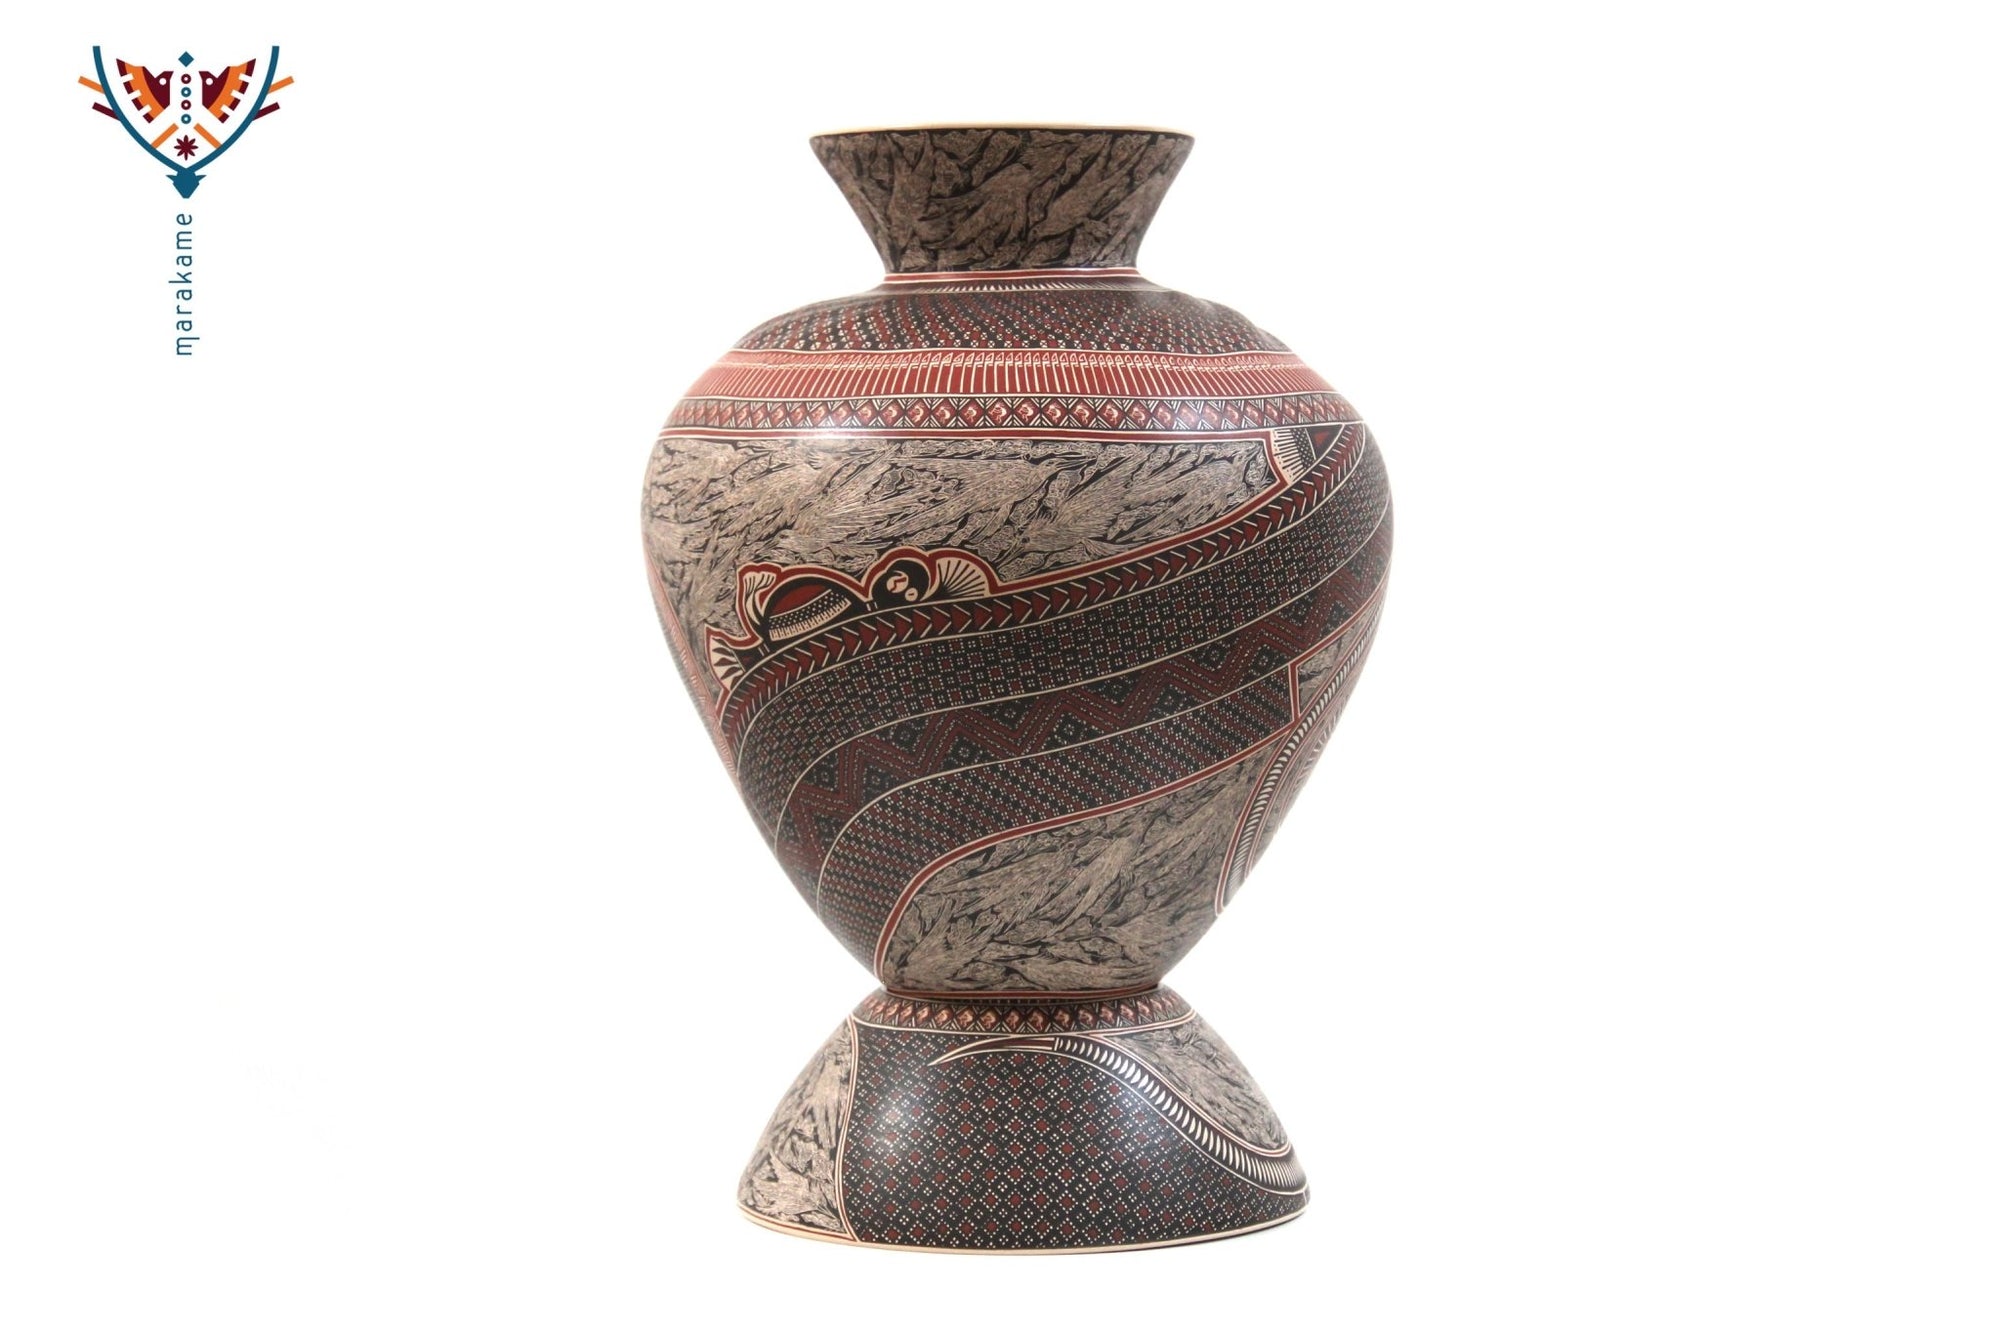 Keramik von Mata Ortiz - Vögel - 3. Platz Keramikwettbewerb 2020 - Huichol Art - Marakame